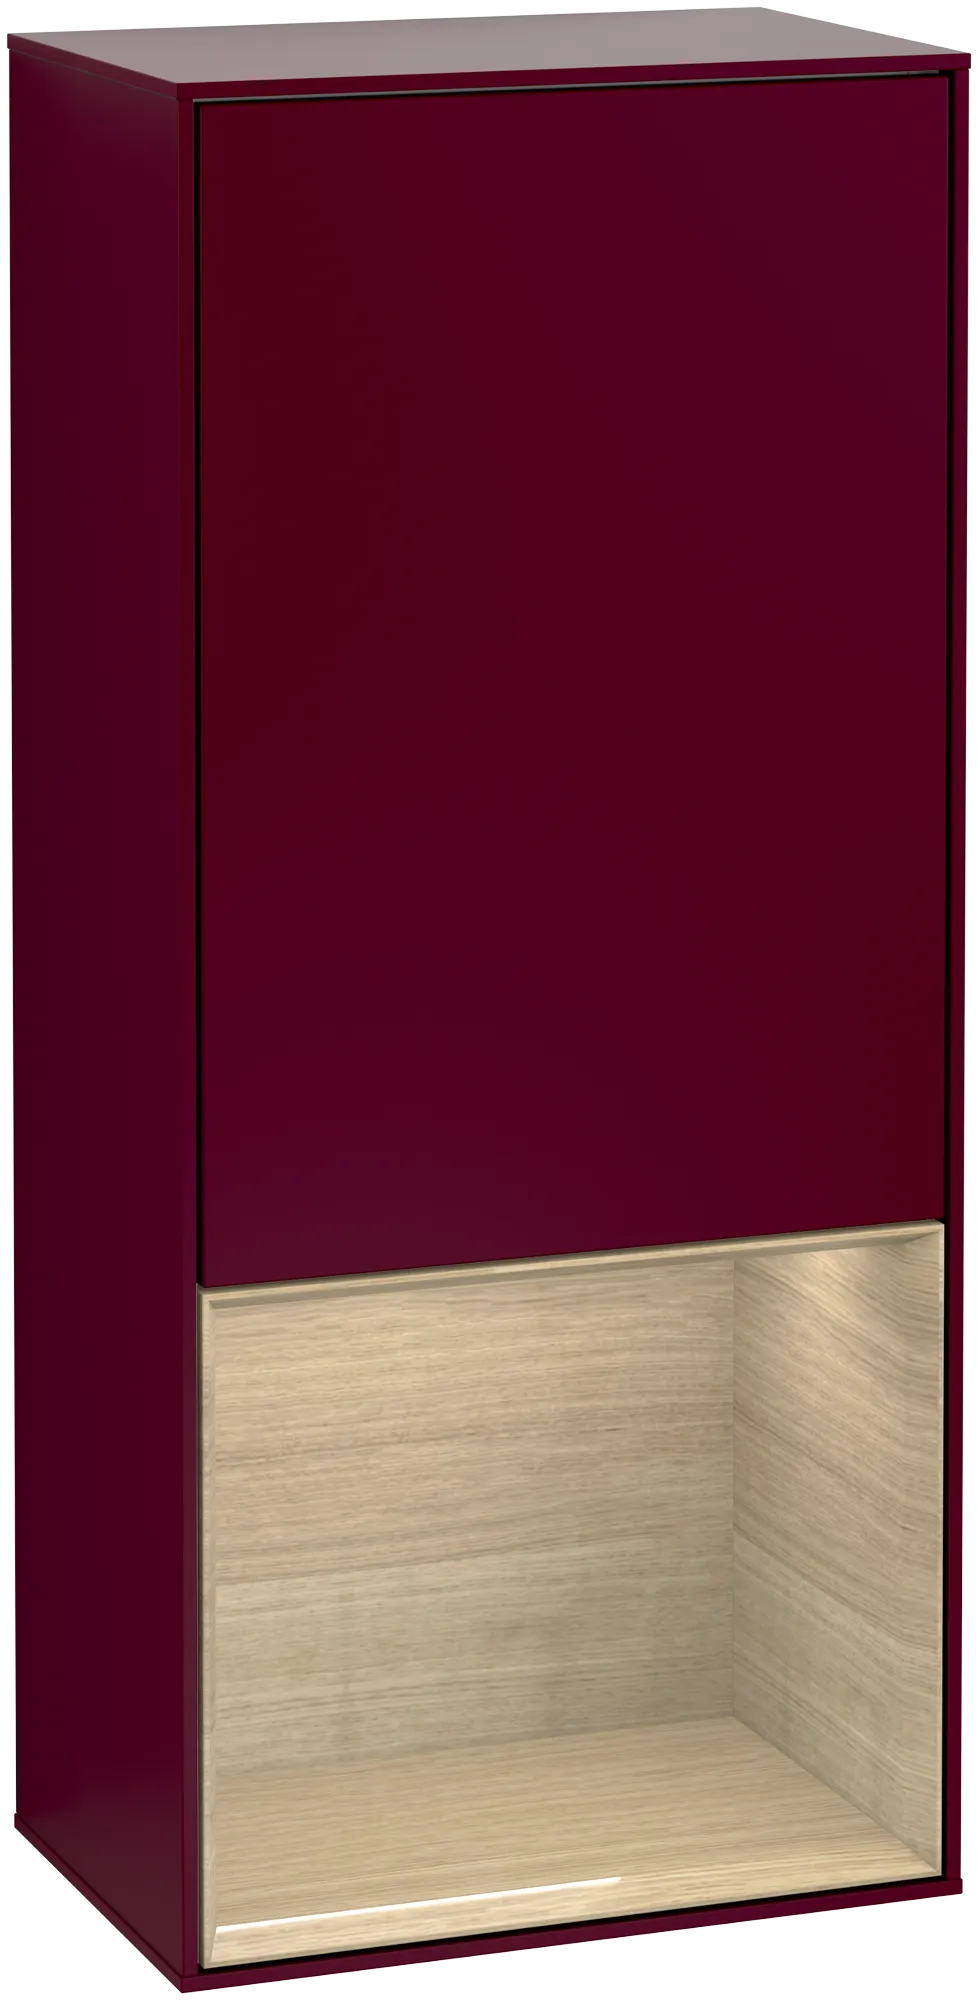 Bild von VILLEROY BOCH Finion Seitenschrank, mit Beleuchtung, 1 Tür, 418 x 936 x 270 mm, Peony Matt Lacquer / Oak Veneer #G540PCHB